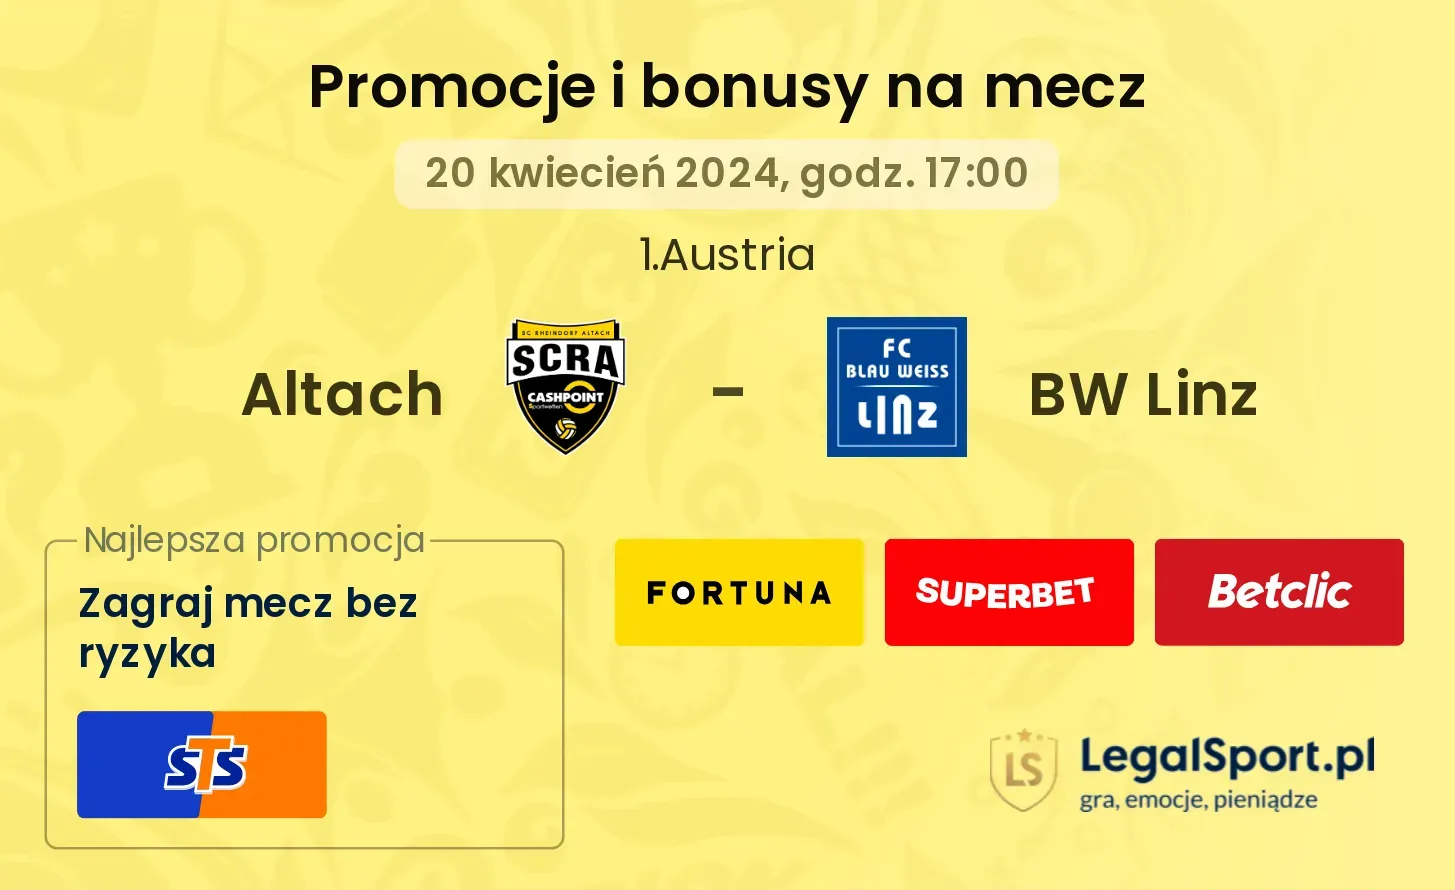 Altach - BW Linz promocje bonusy na mecz